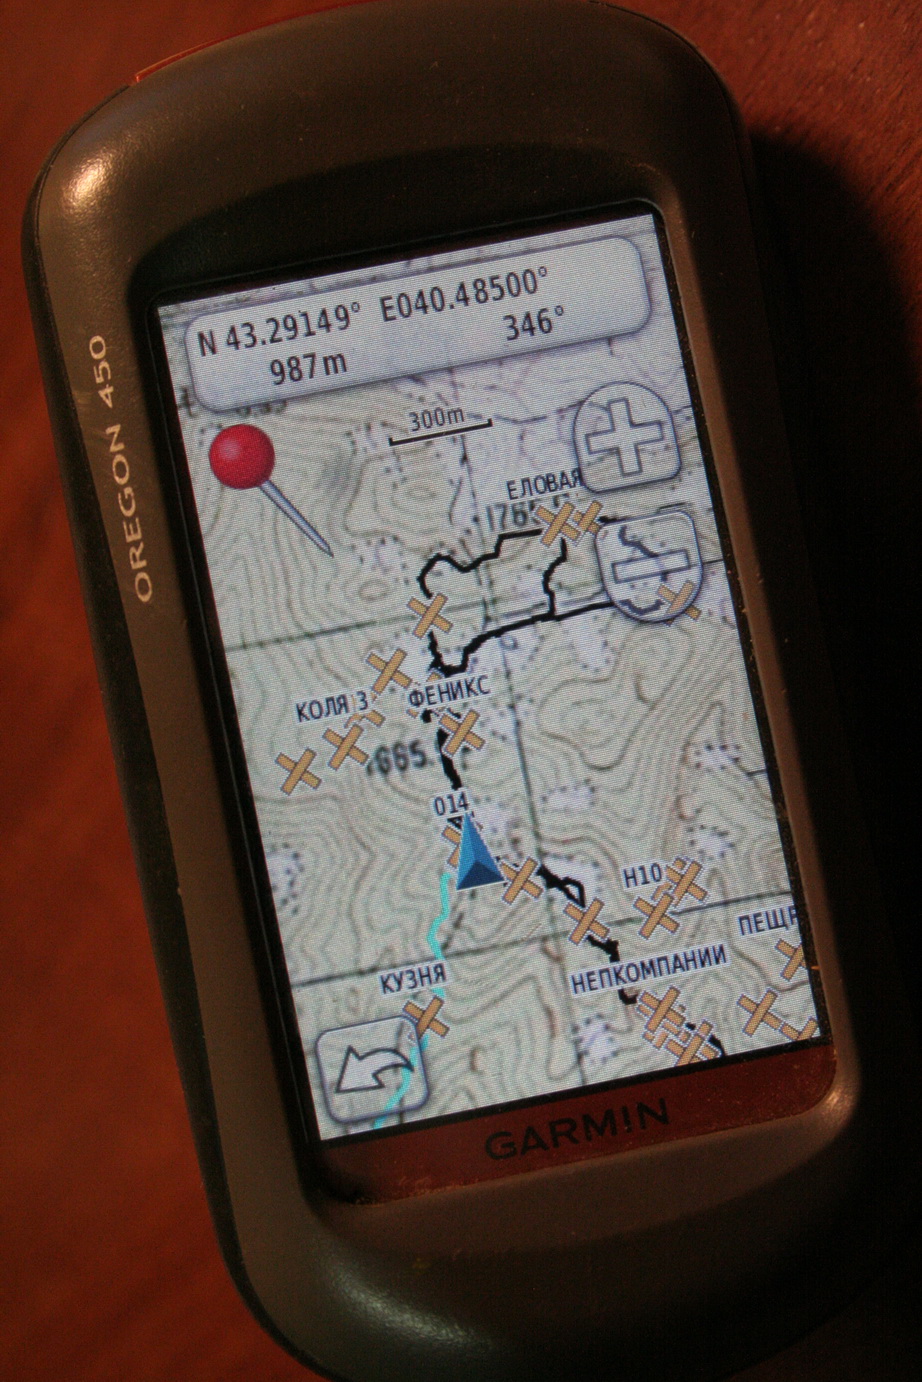 Garmin закачать карту. Растровые карты для Garmin. Карты для навигатора Garmin. Навигатор с картинками местности. Топокарты для Garmin.